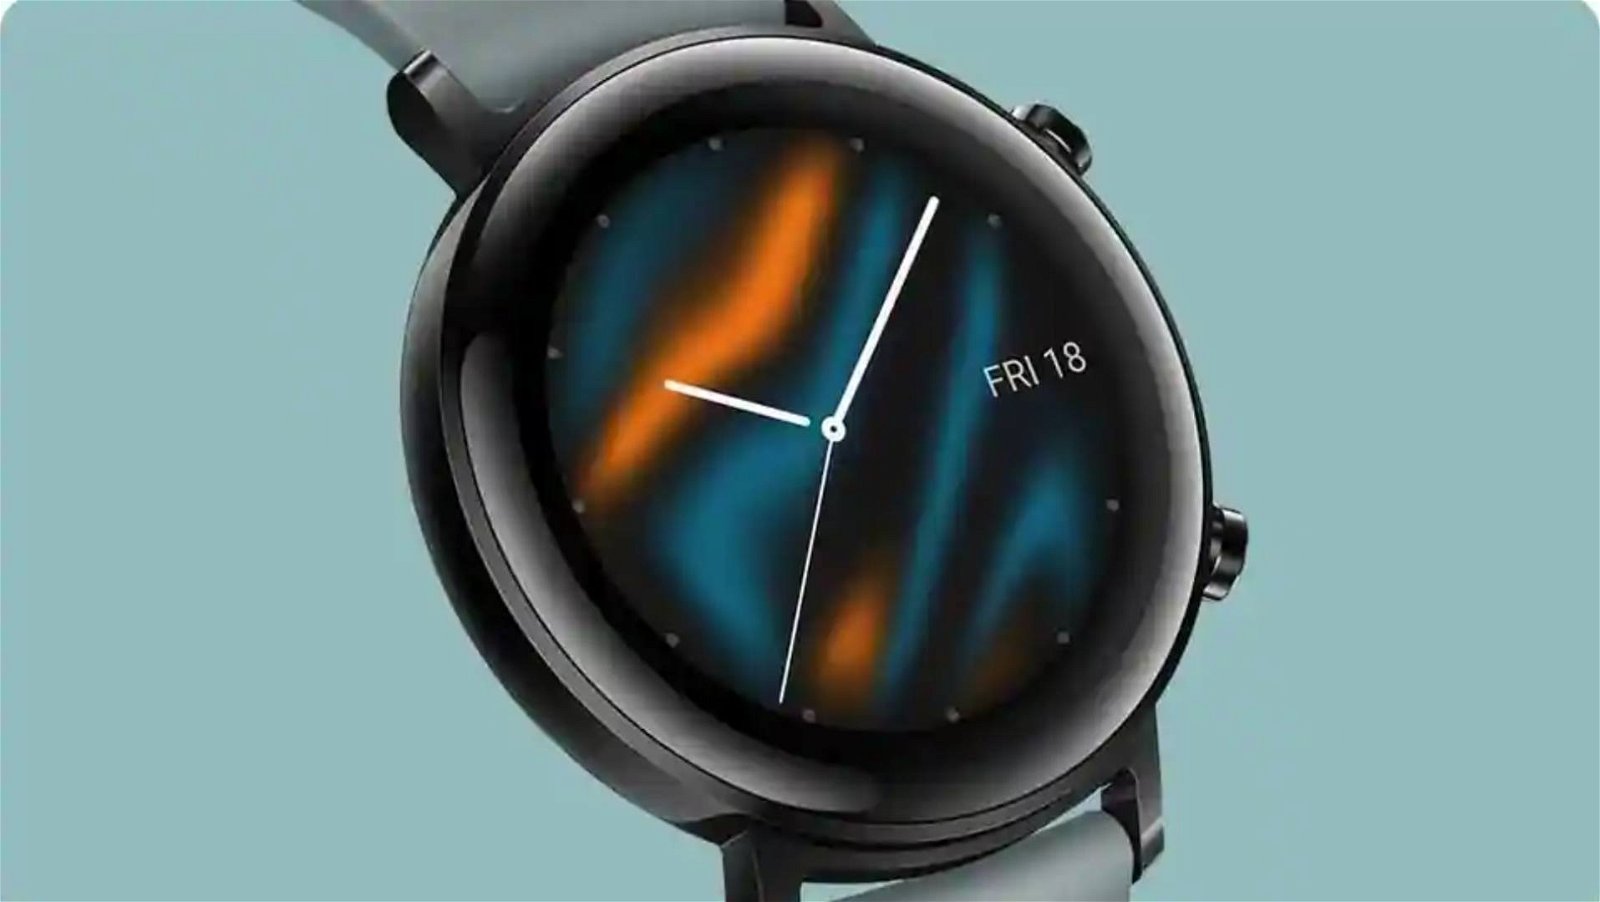 Immagine di Huawei Mate Watch, il primo smartwatch con HarmonyOS